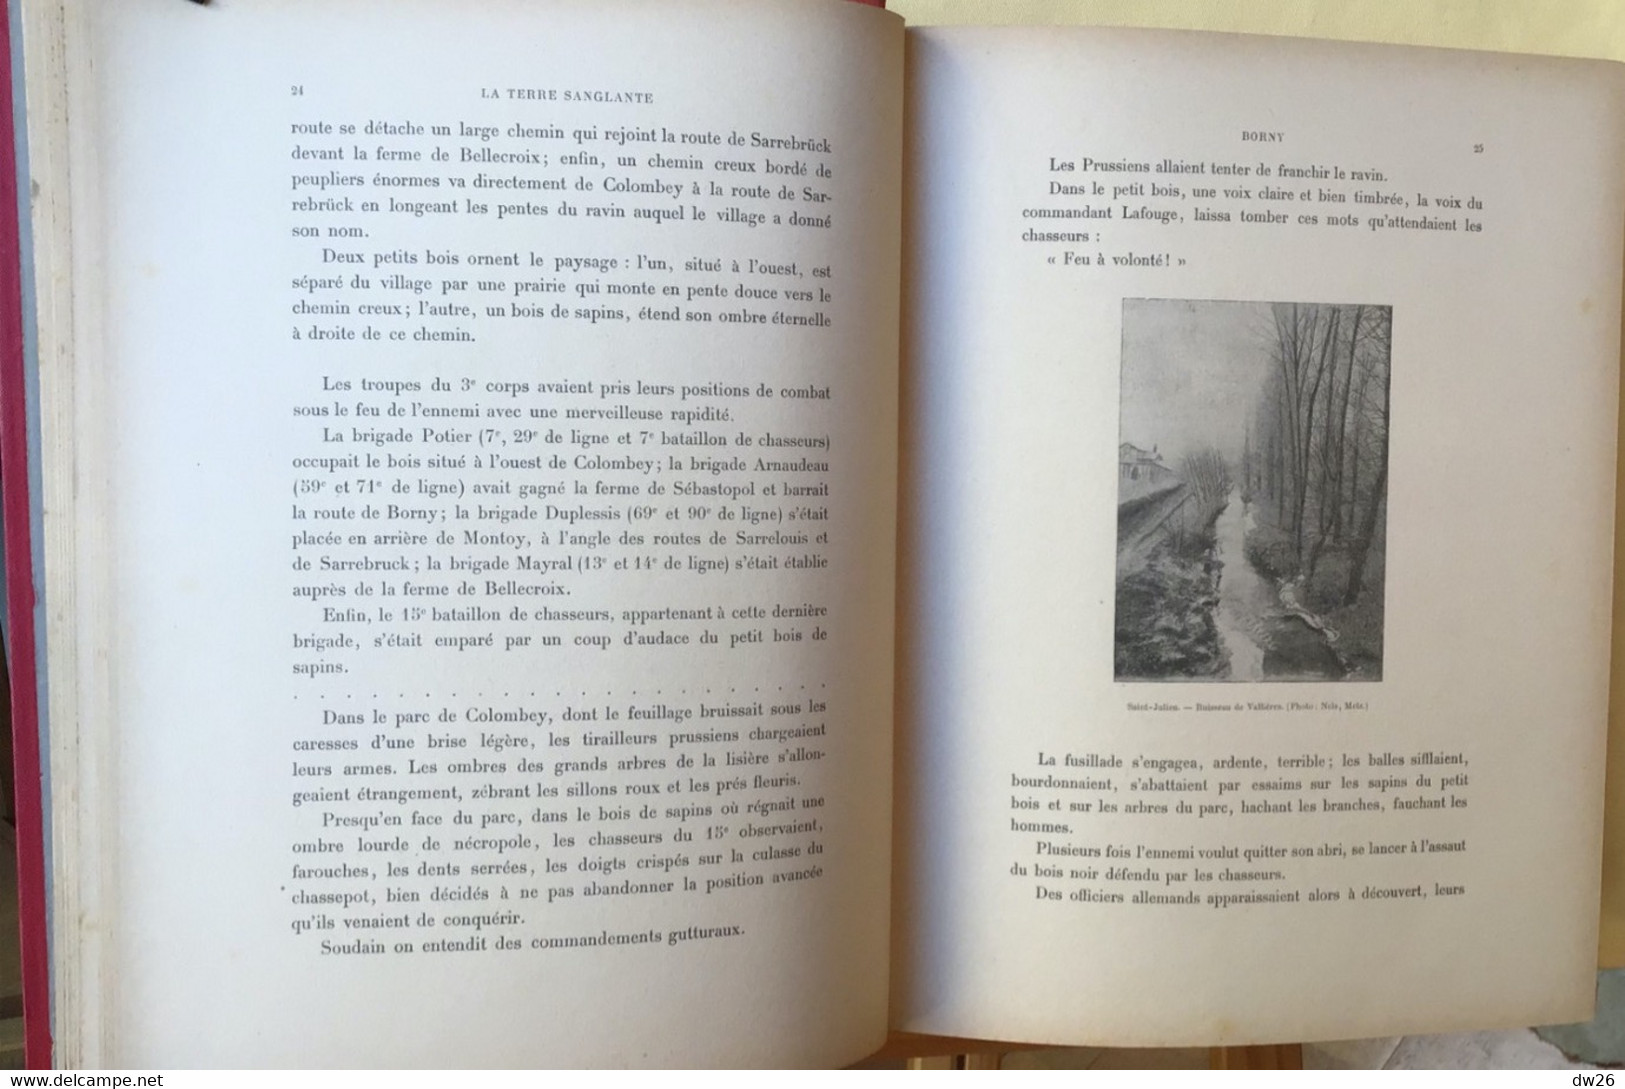 Livre Guerre De 1870: Jules Mazé, La Terre Sanglante (L'Année Terrible) Editeurs A. Mame & Fils à Tours - Geschiedenis